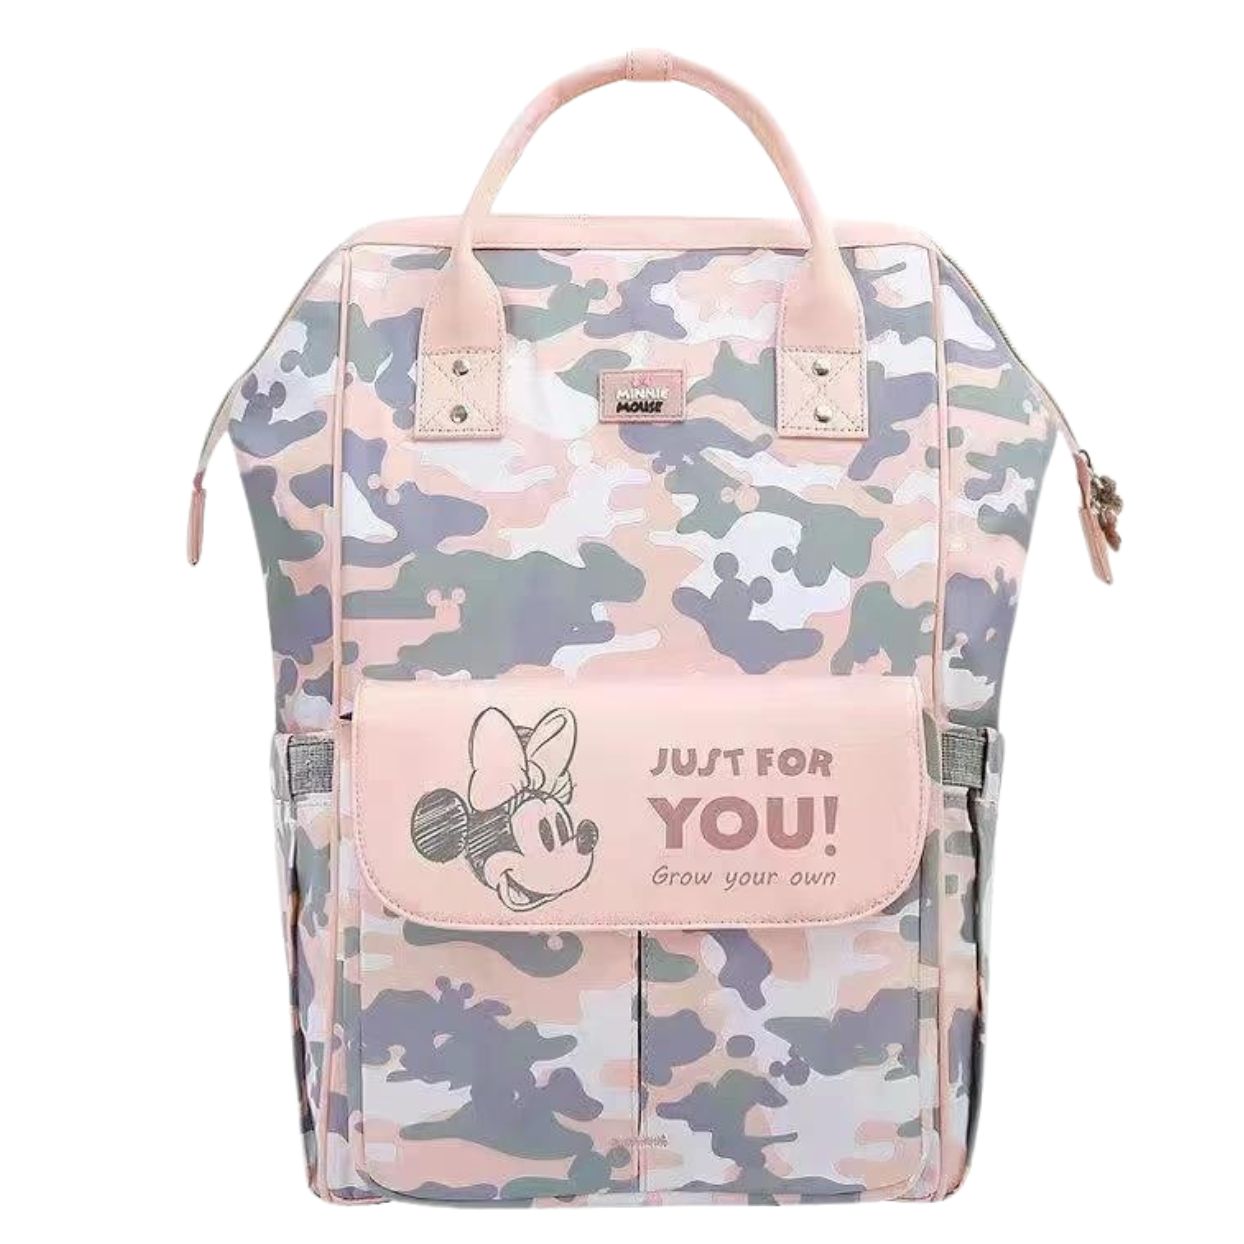 Disney Cartoons Diaper Bag Backpack